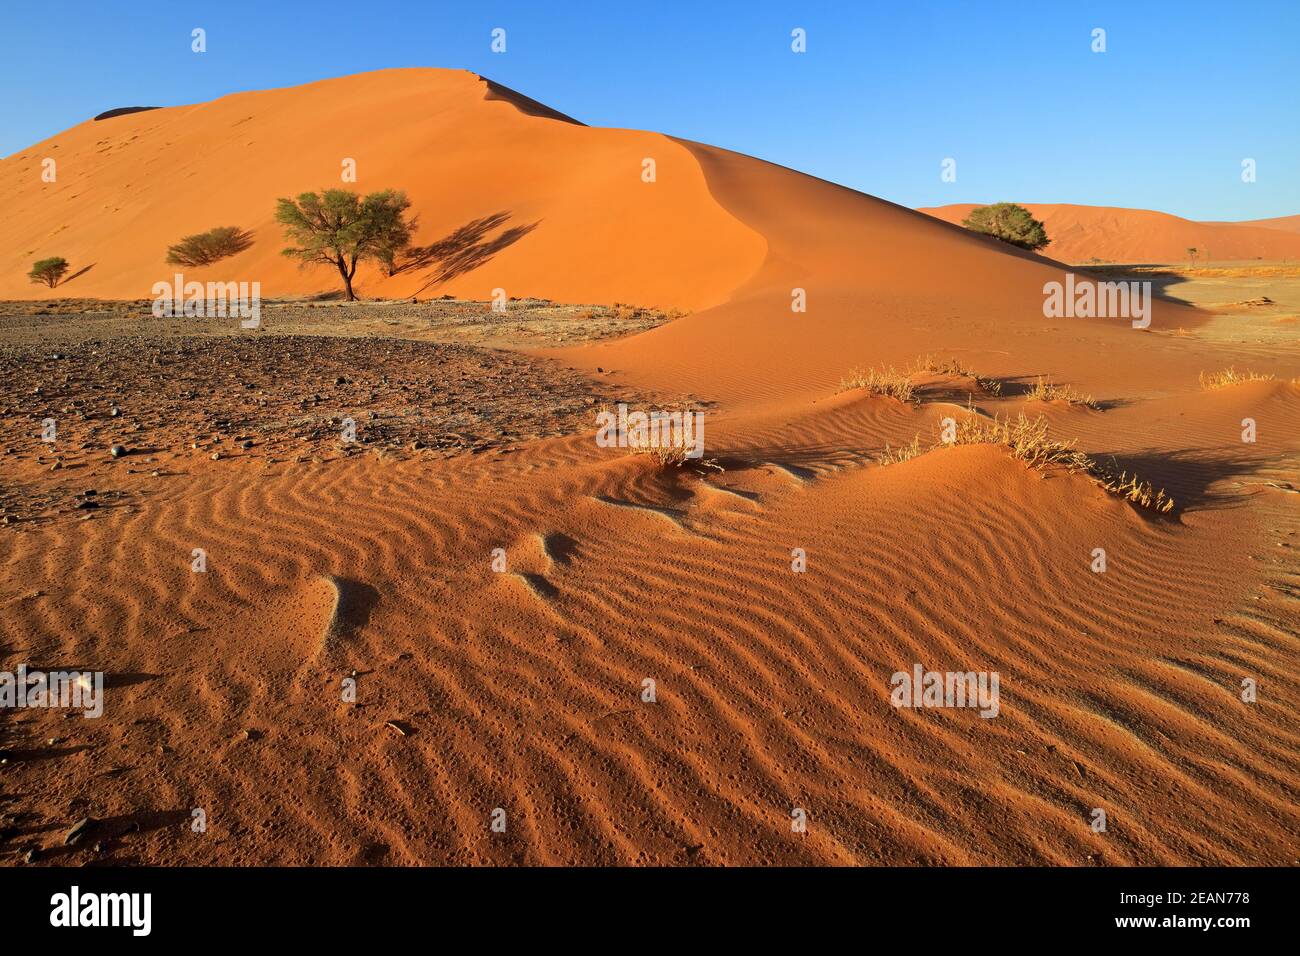 Sand dune and trees - Namib desert Stock Photo